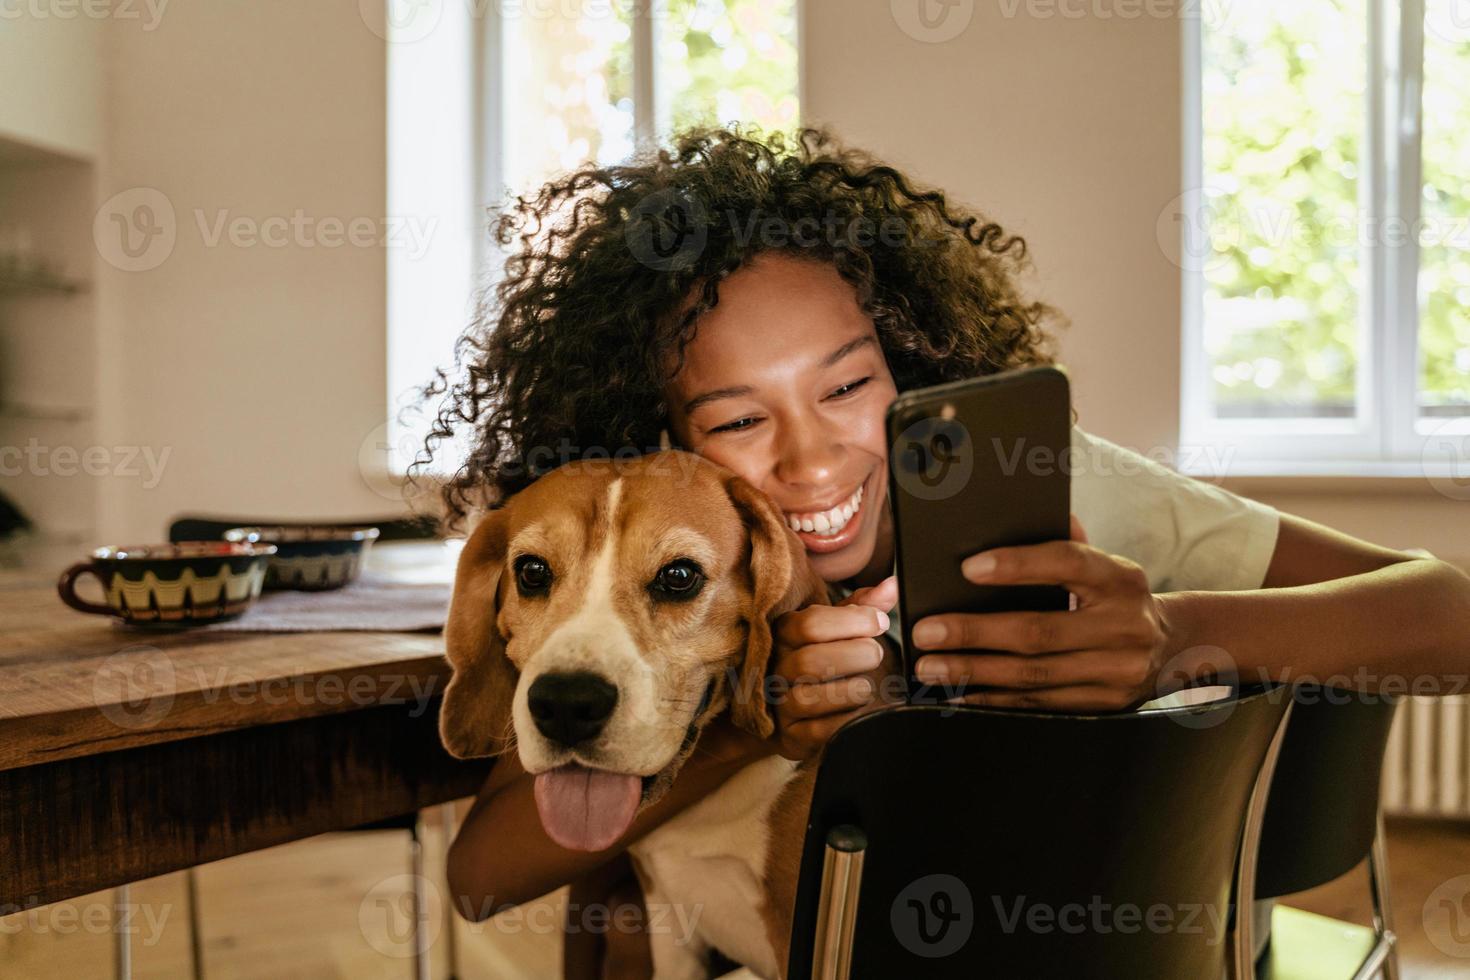 jovem negra se abraçando com seu cachorro enquanto usa o telefone celular foto